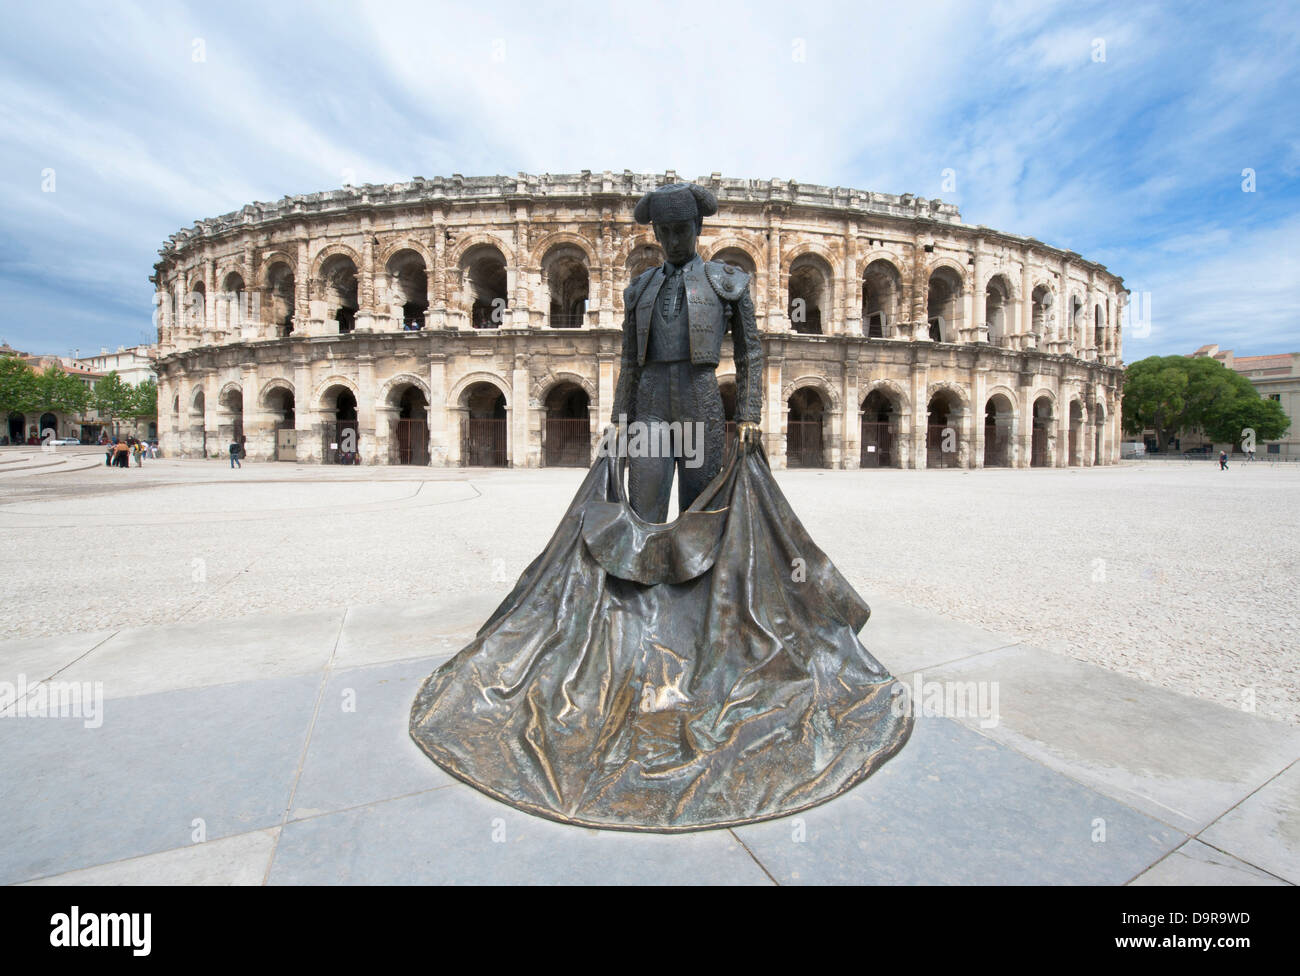 Statue du célèbre bull-fighter Nimeño devant les Arénes, l'amphithéâtre romain de Nîmes, Languedoc, France Banque D'Images